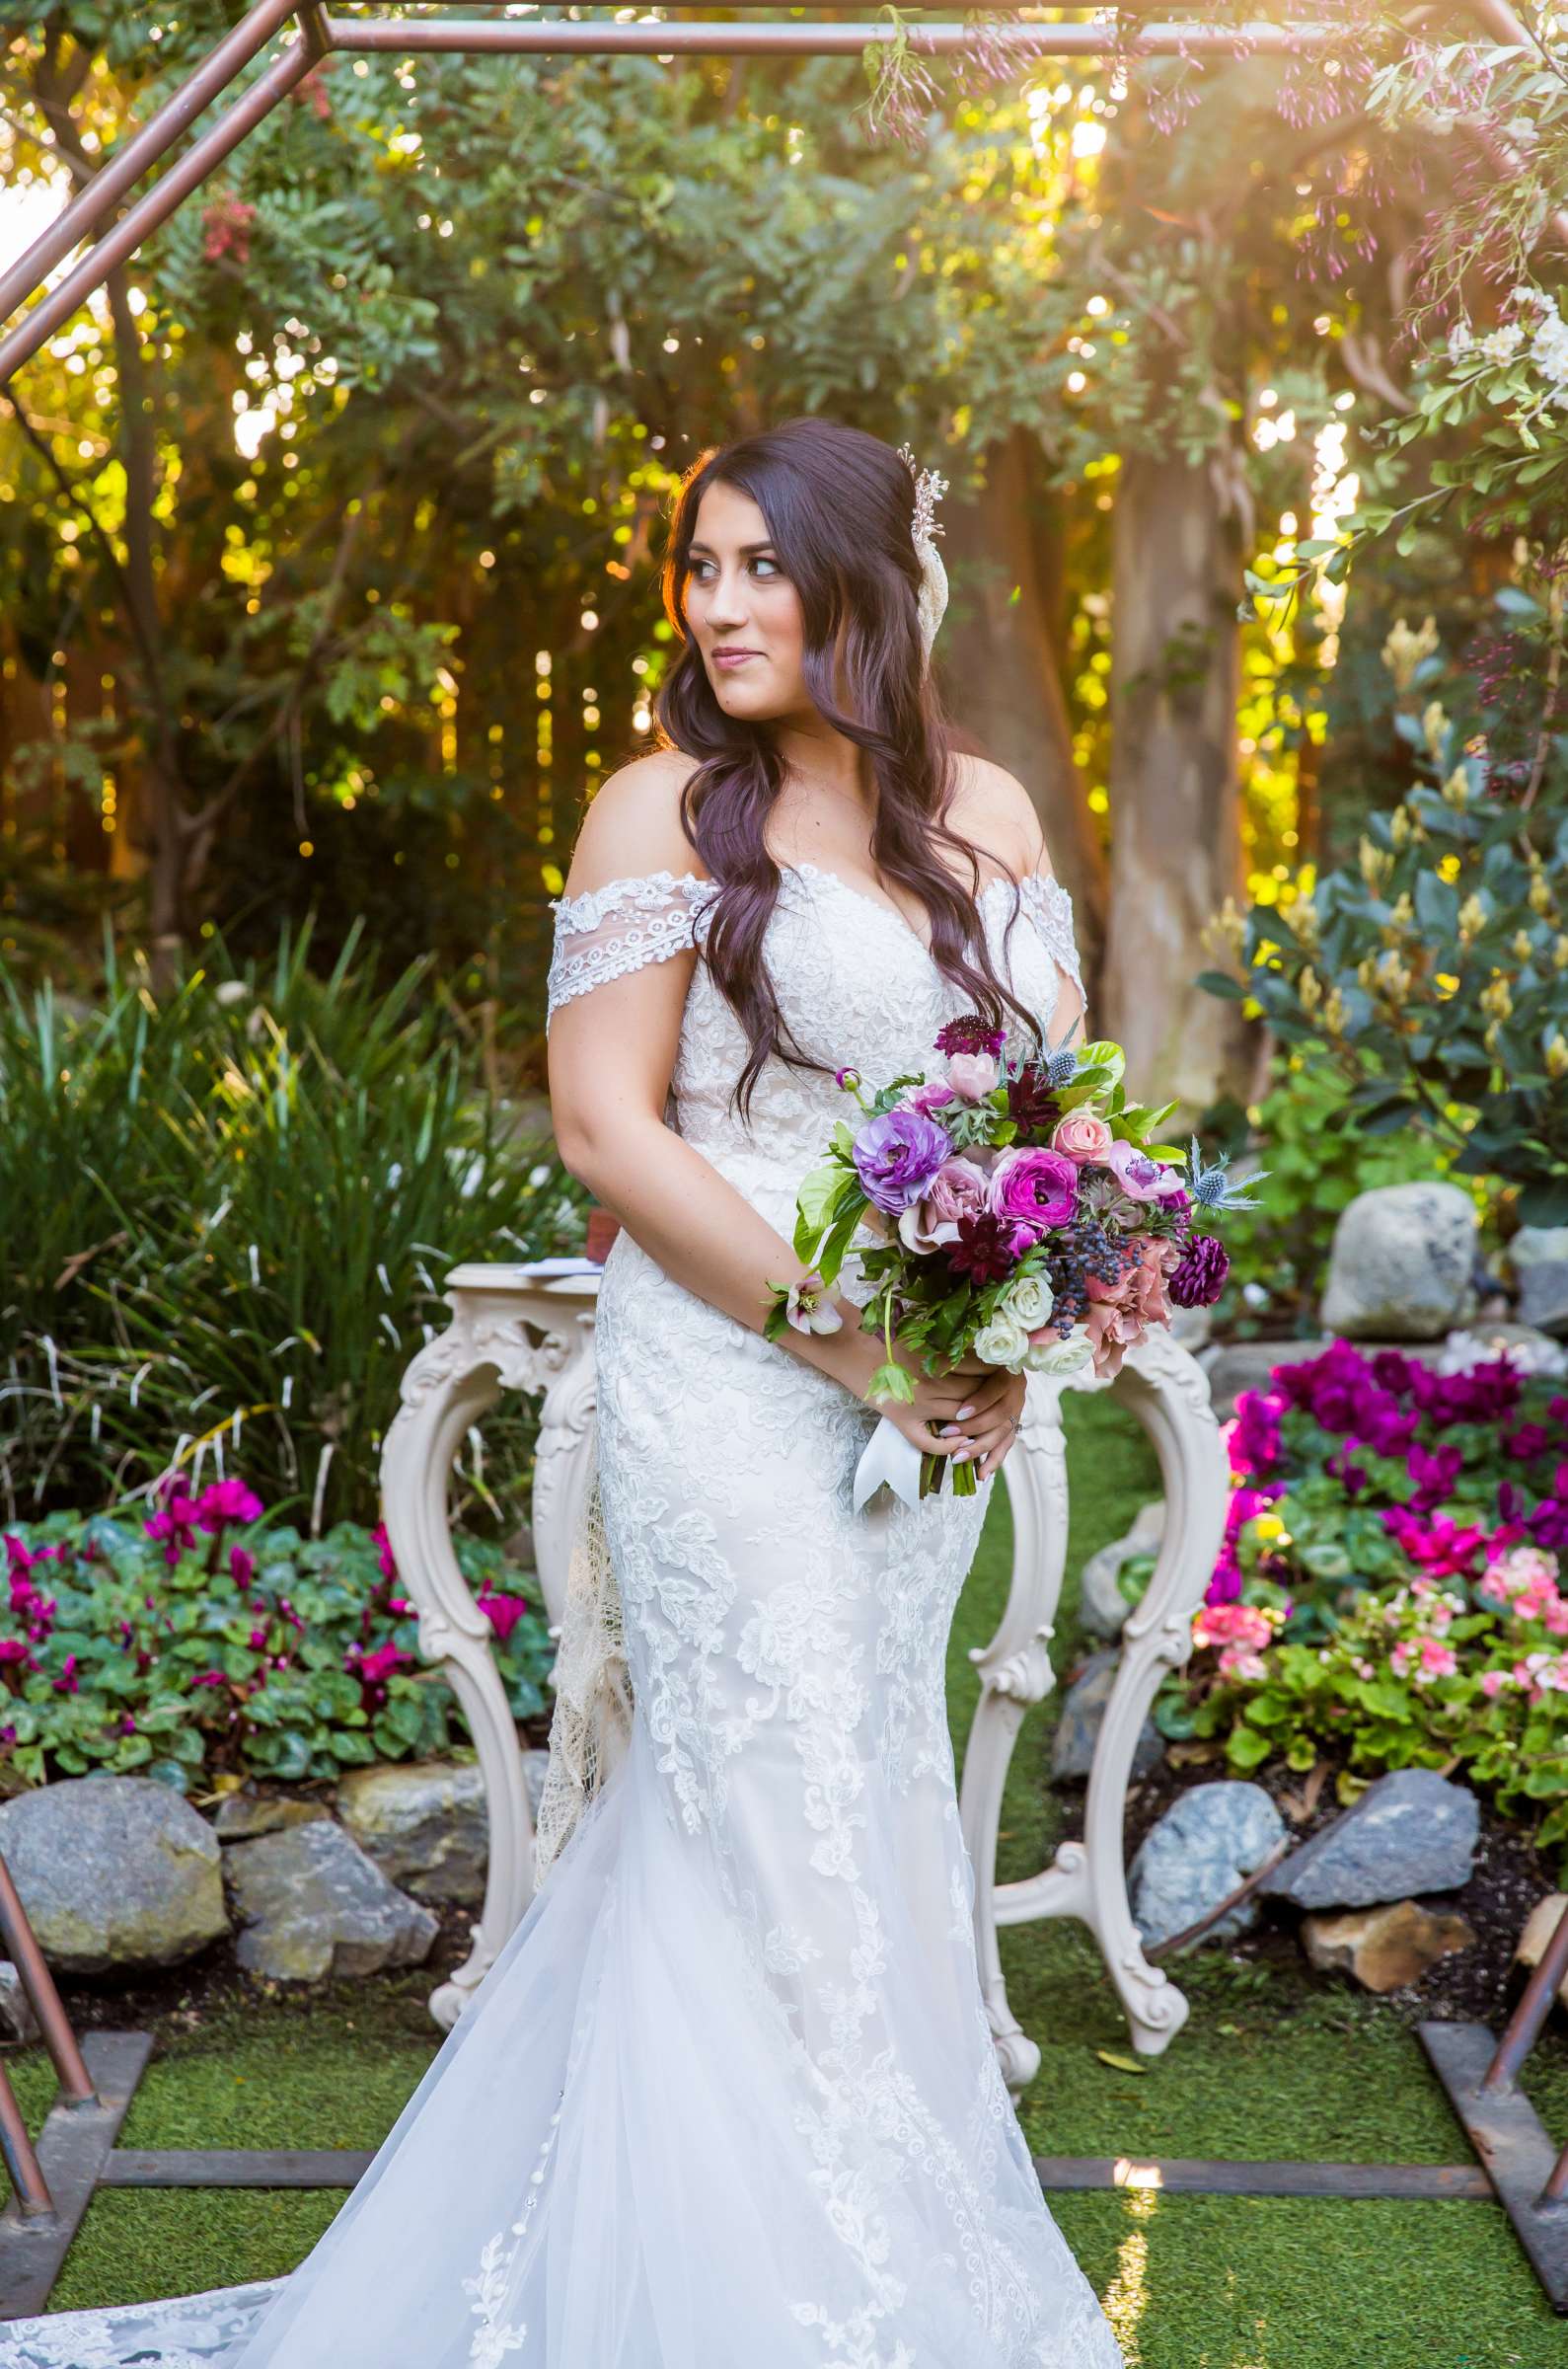 Twin Oaks House & Gardens Wedding Estate Wedding, Stephanie and Ilija Wedding Photo #120 by True Photography